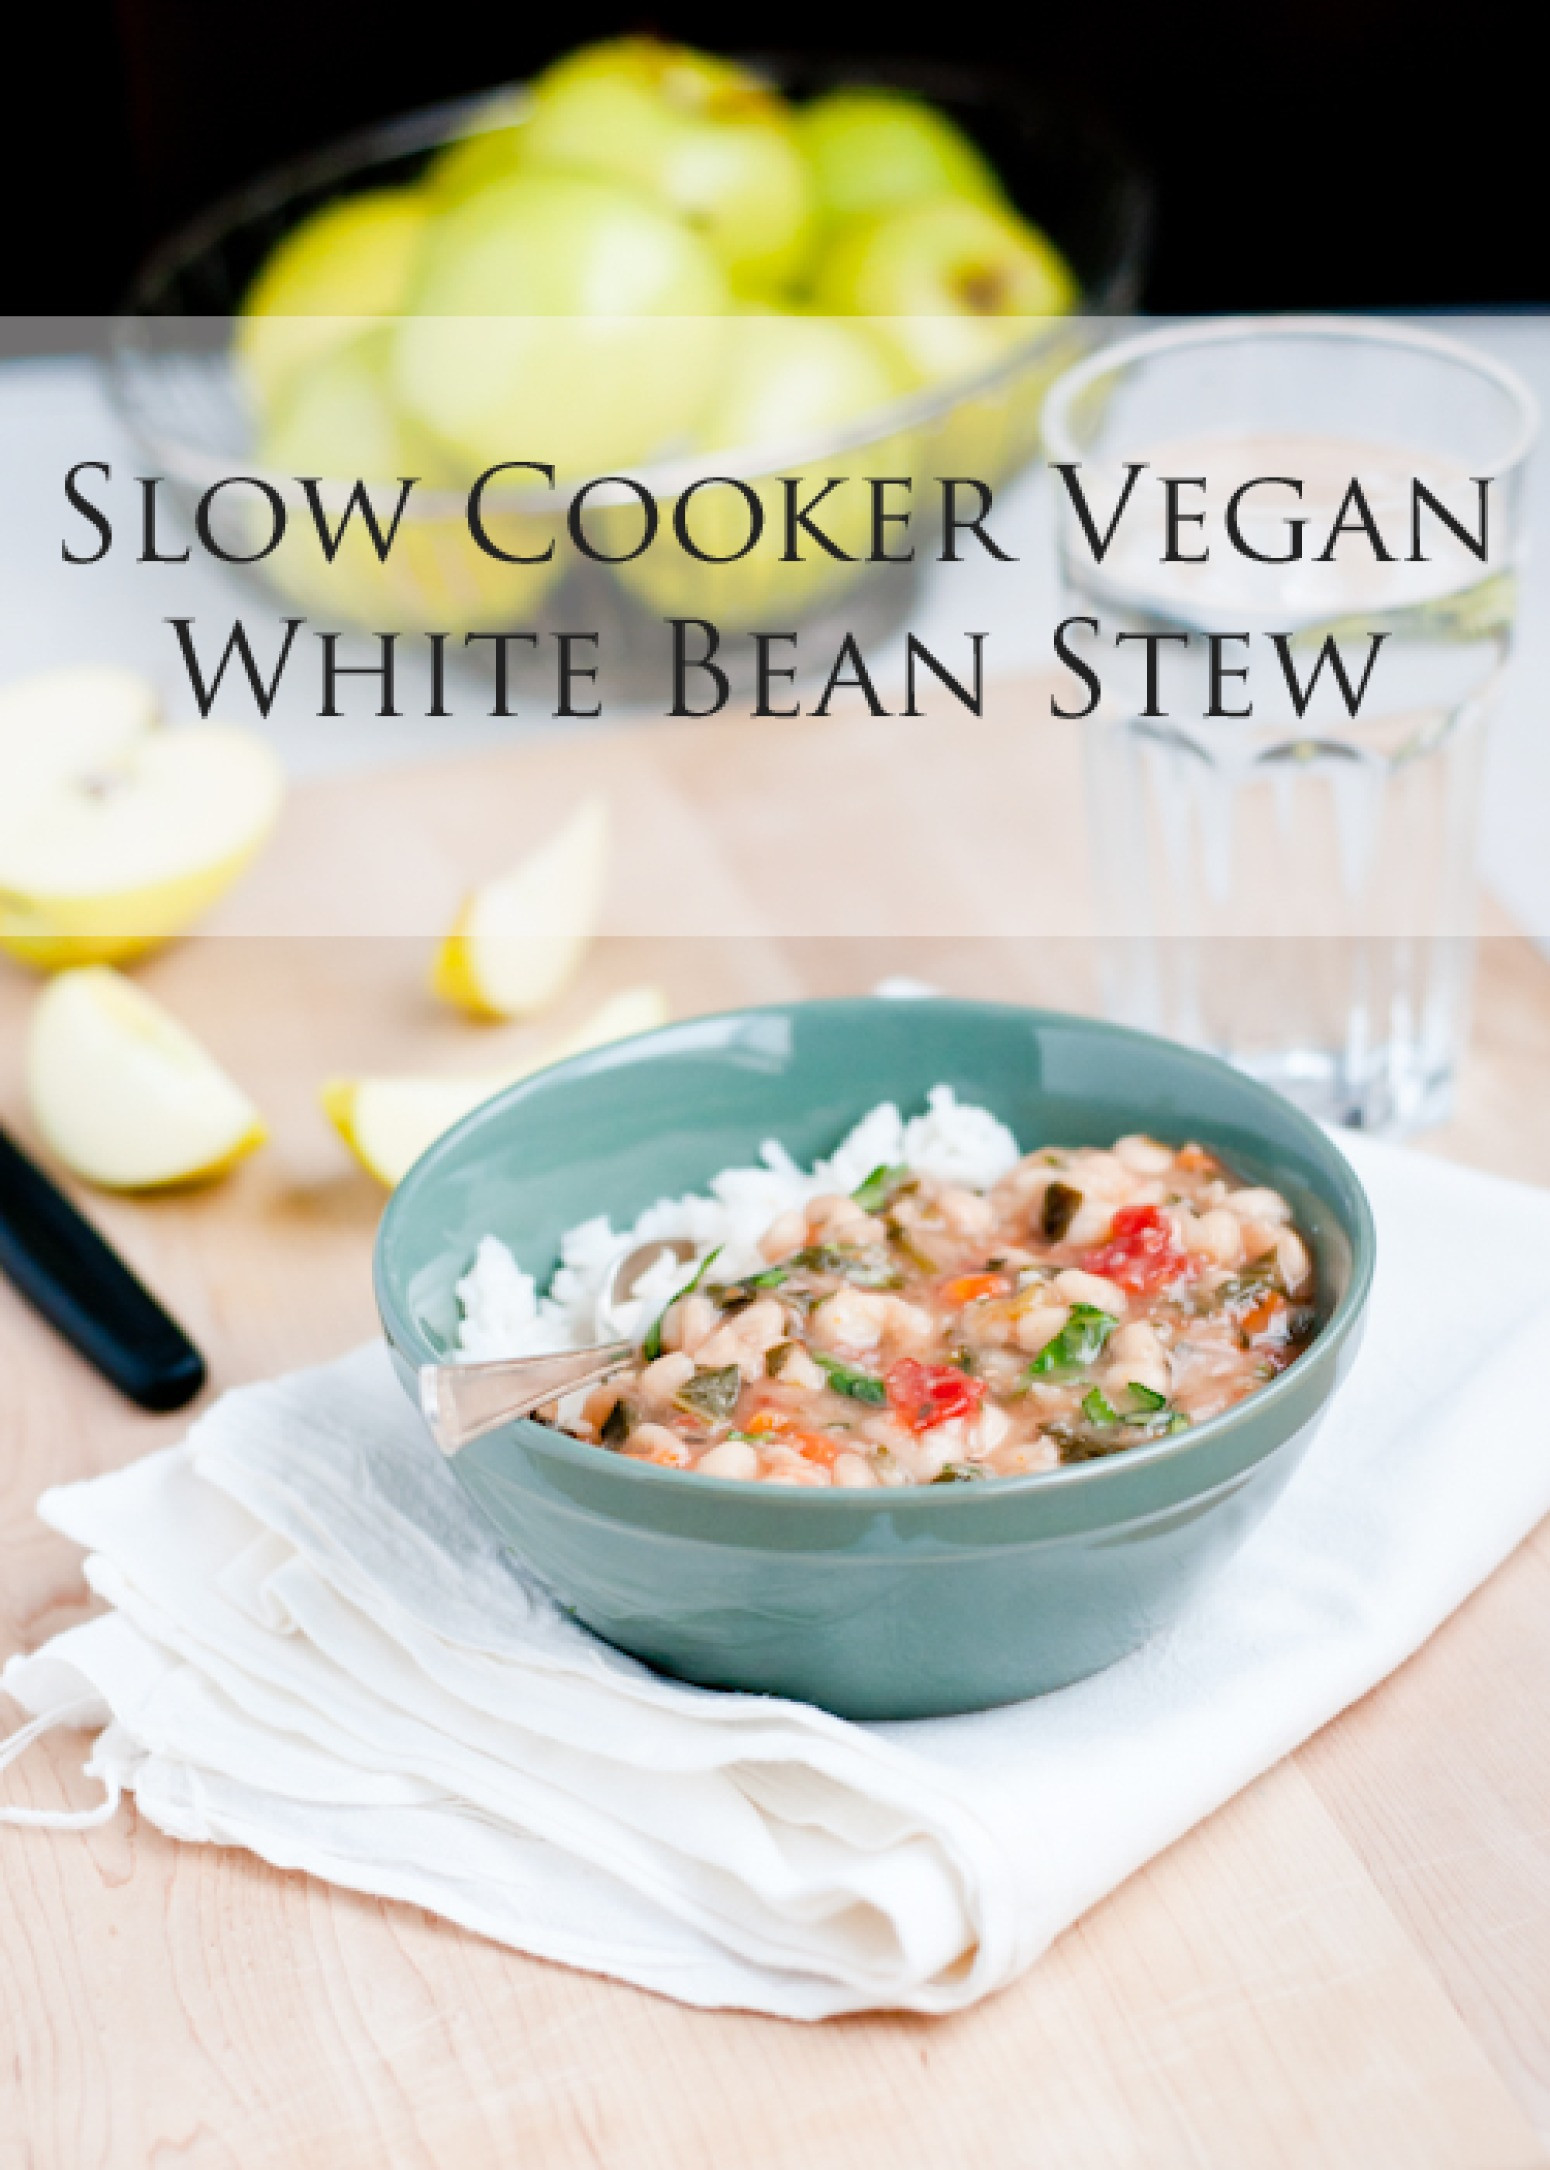 Vegan Stew Slow Cooker
 Slow Cooker Vegan White Bean Stew Recipe